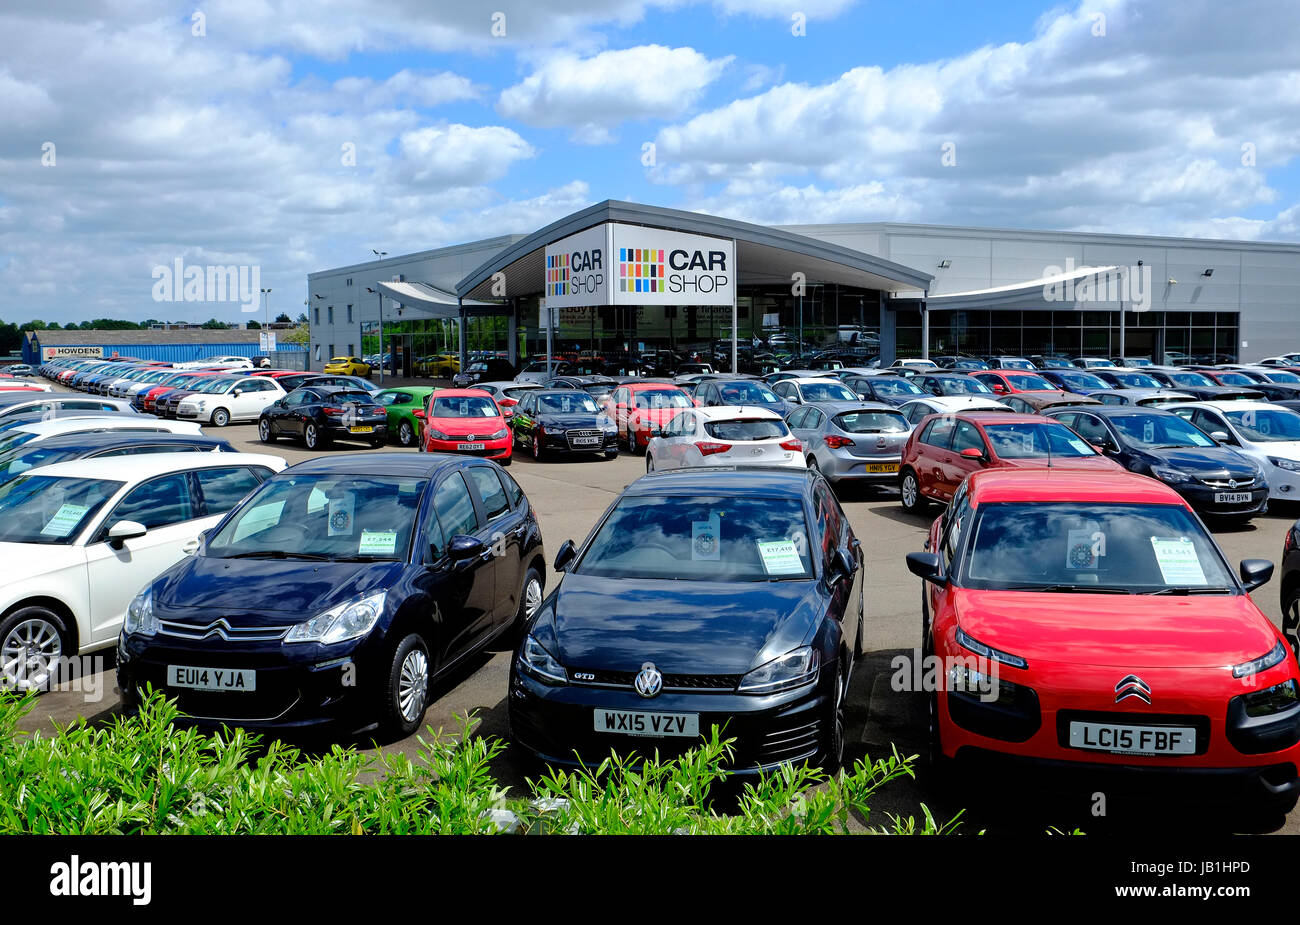 Car shop supermarché, Norwich, Norfolk, Angleterre Banque D'Images